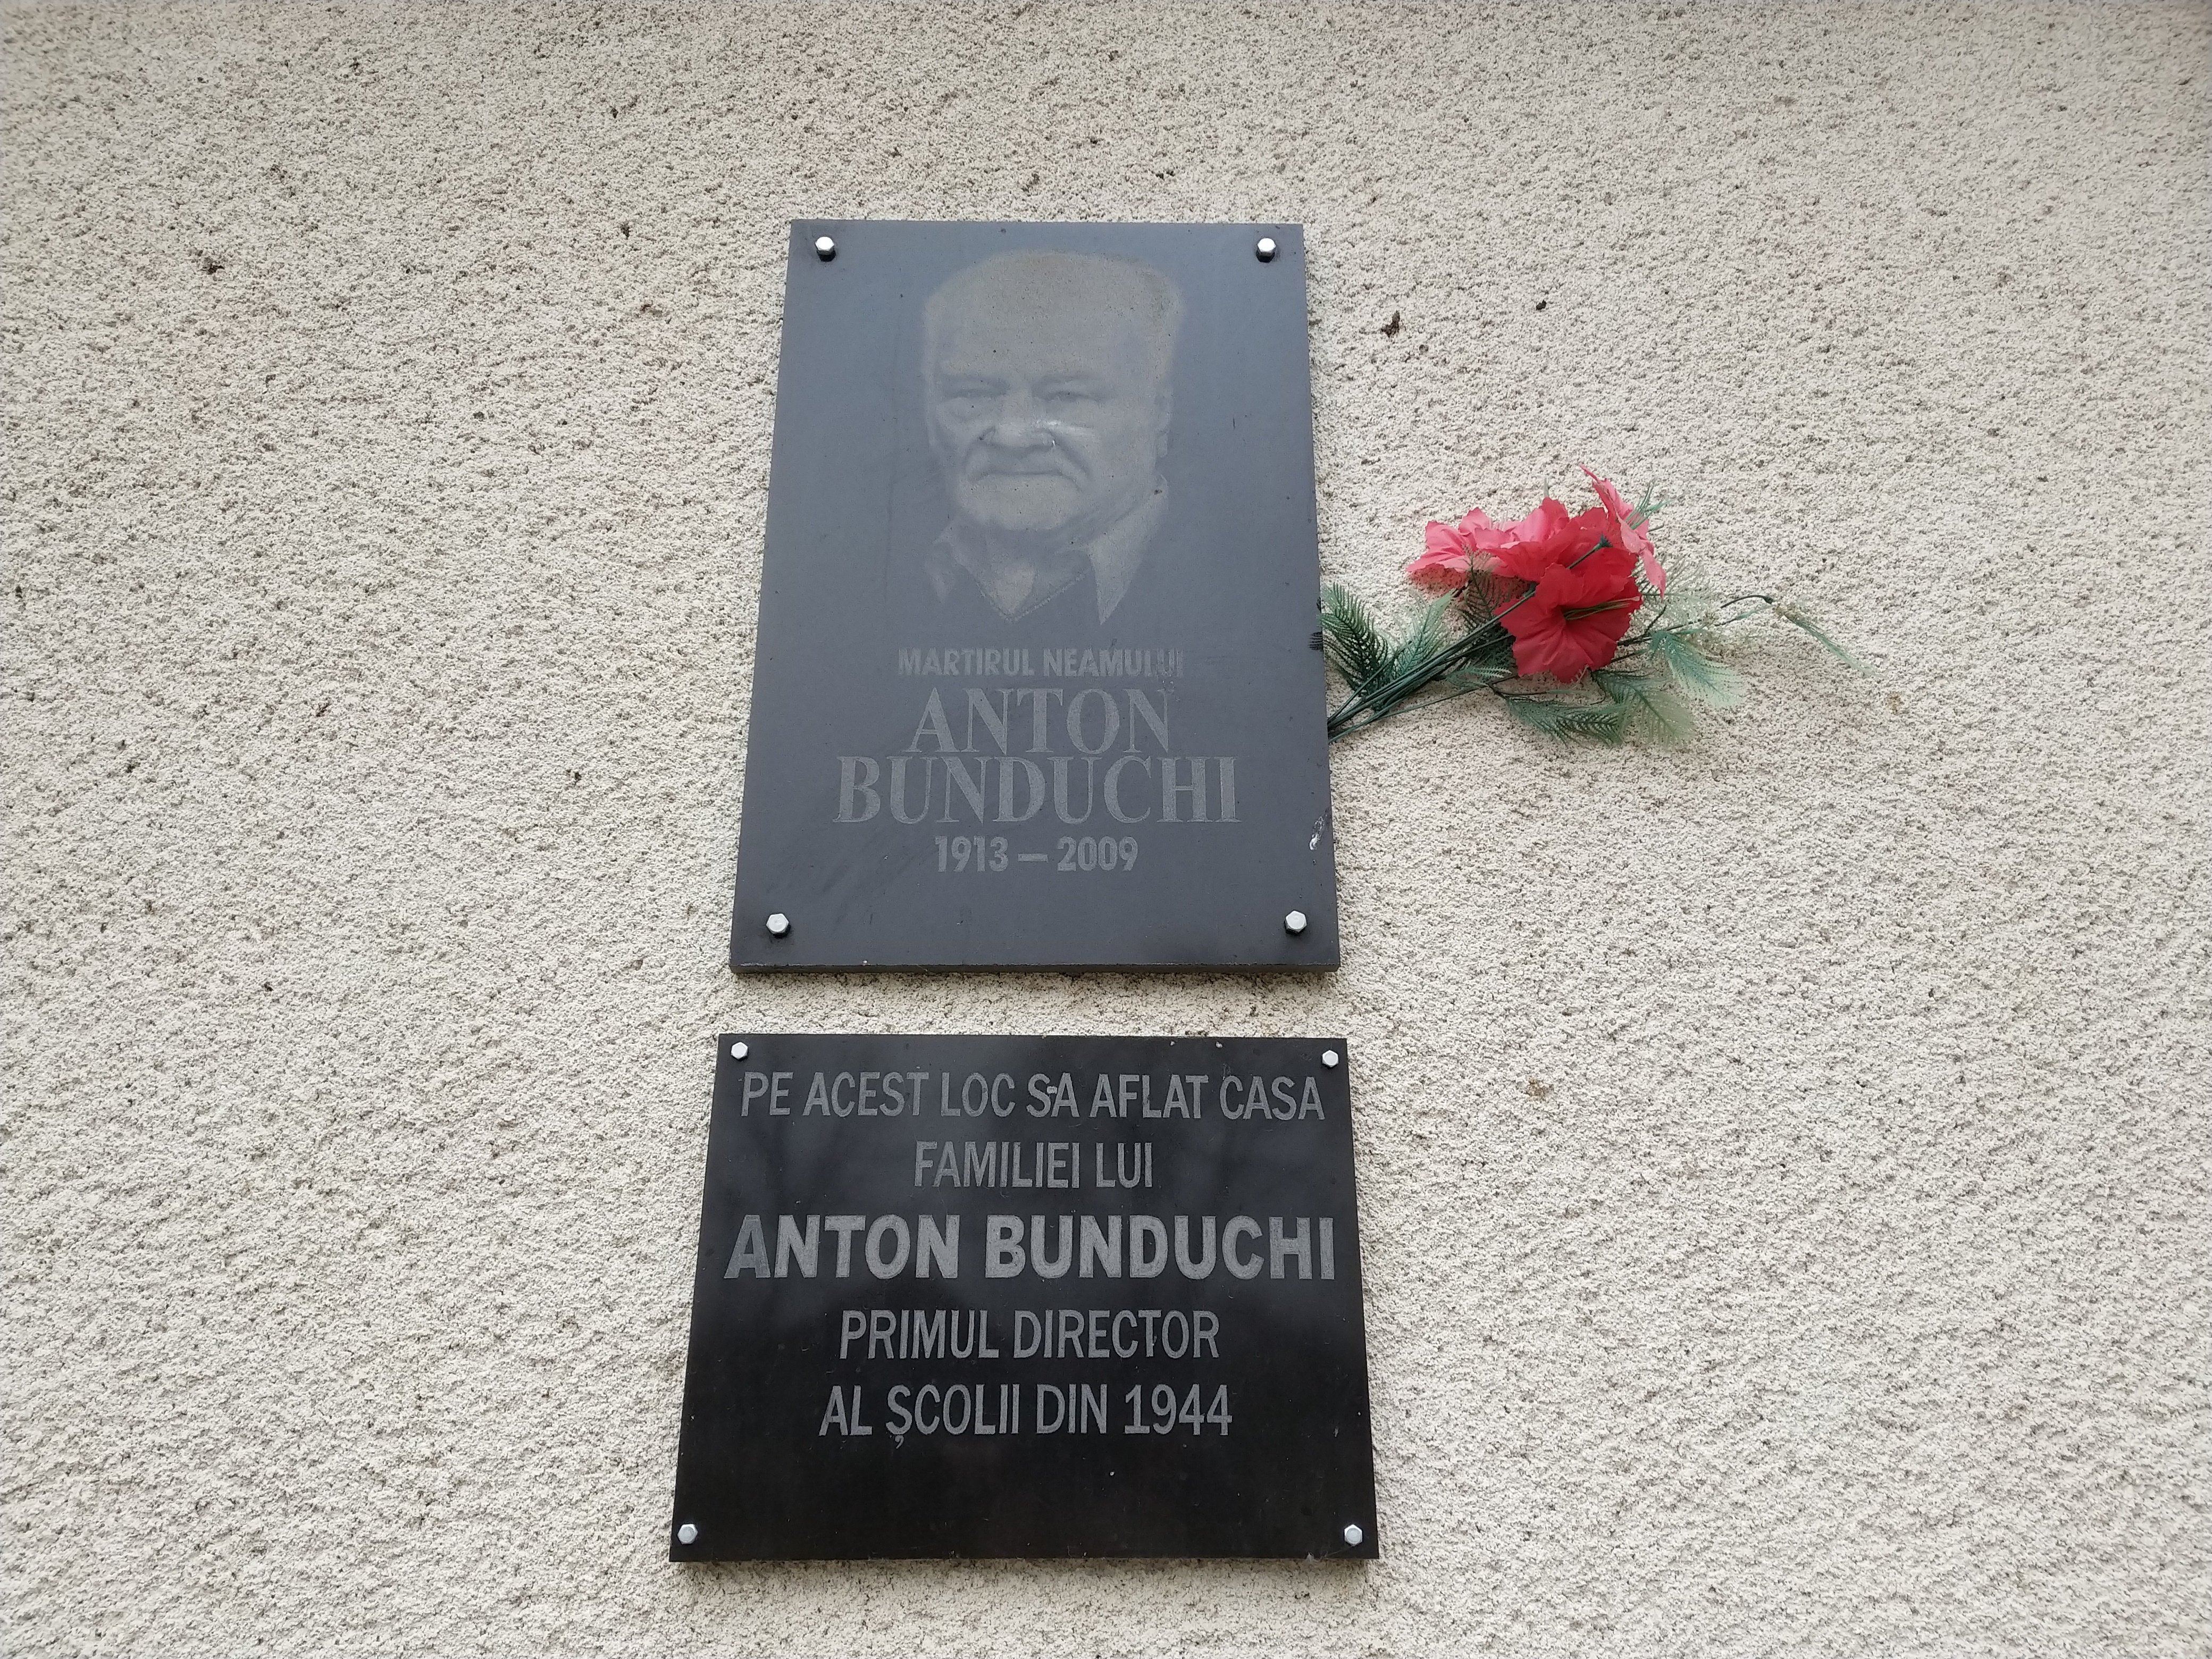 MD, Raionul Hînceşti, Satul Buţeni, Monument lui Anton Bunduchi